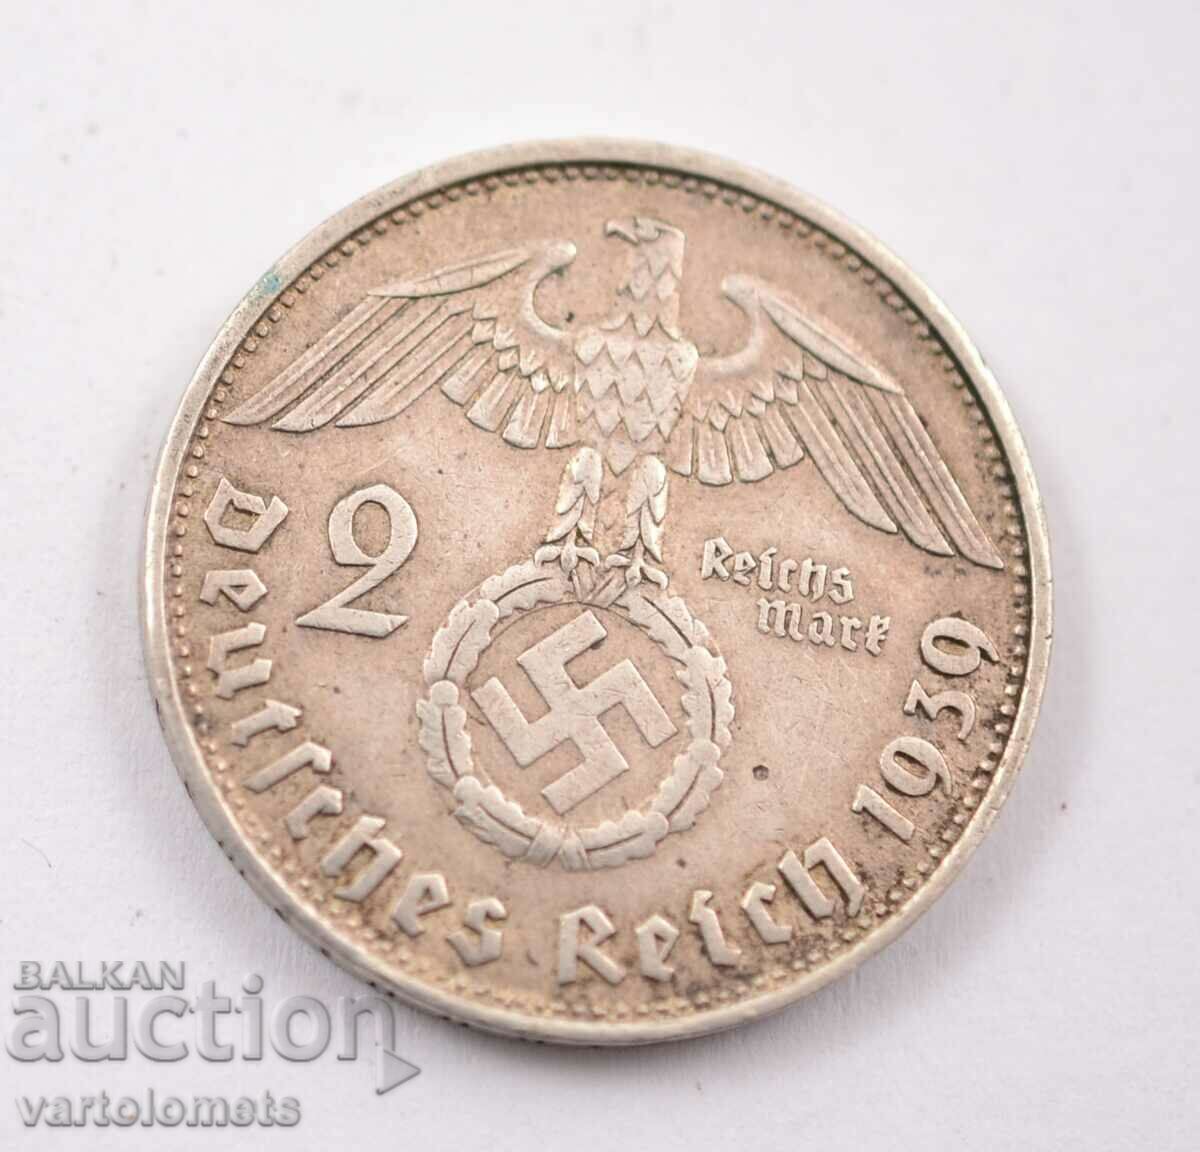 2 Reichsmarks 1939 - Germany Third Reich silver 625/ 8 g